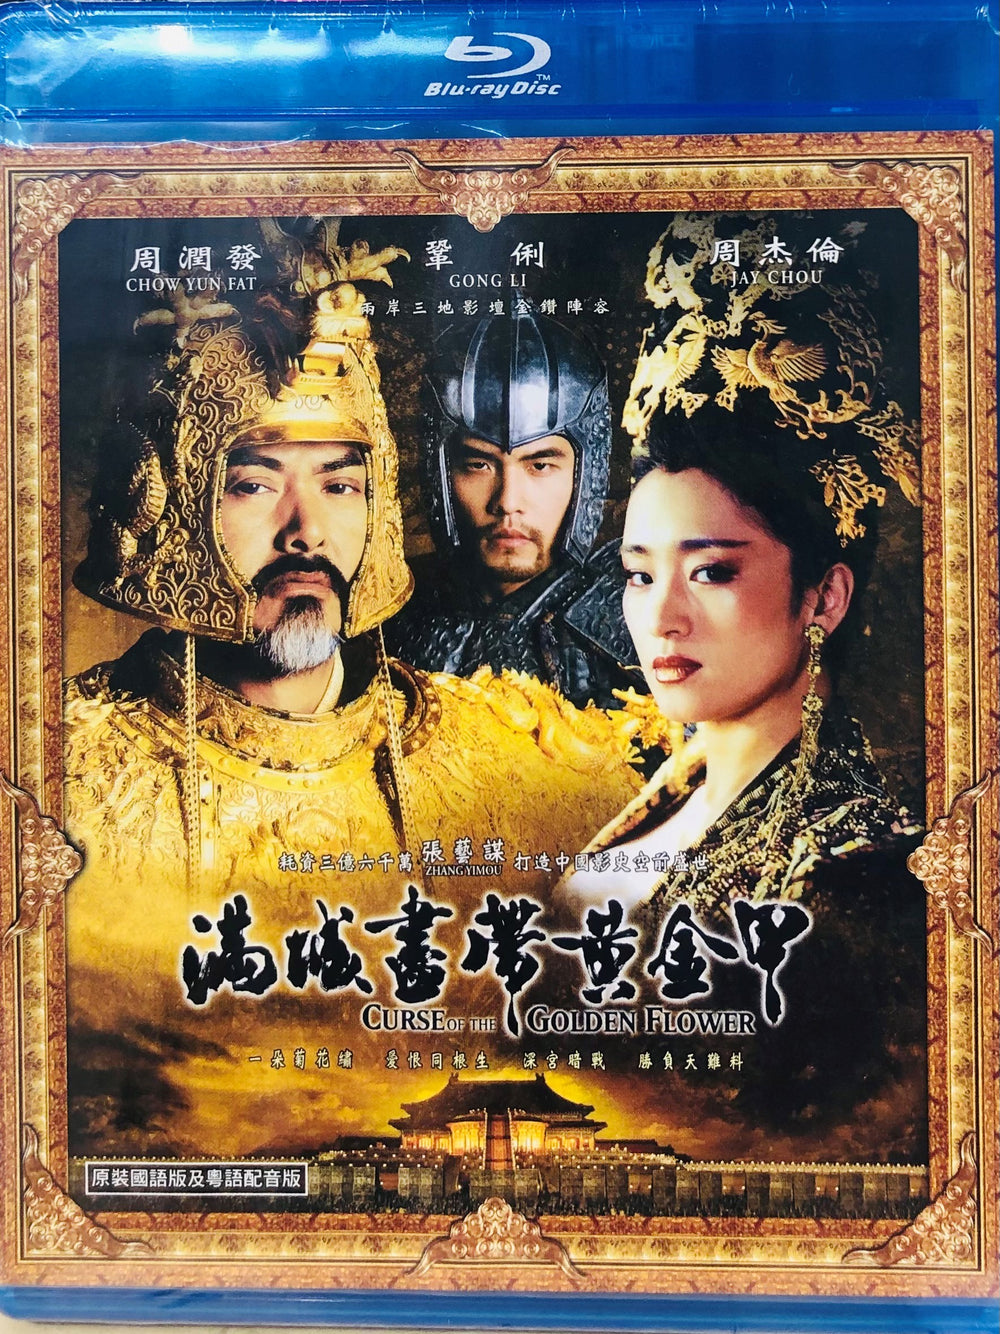 Curse of The Golden Flower 滿城盡帶黃金甲 2006 (Mandarin Movie) BLU-RAY with English Sub (Region A)